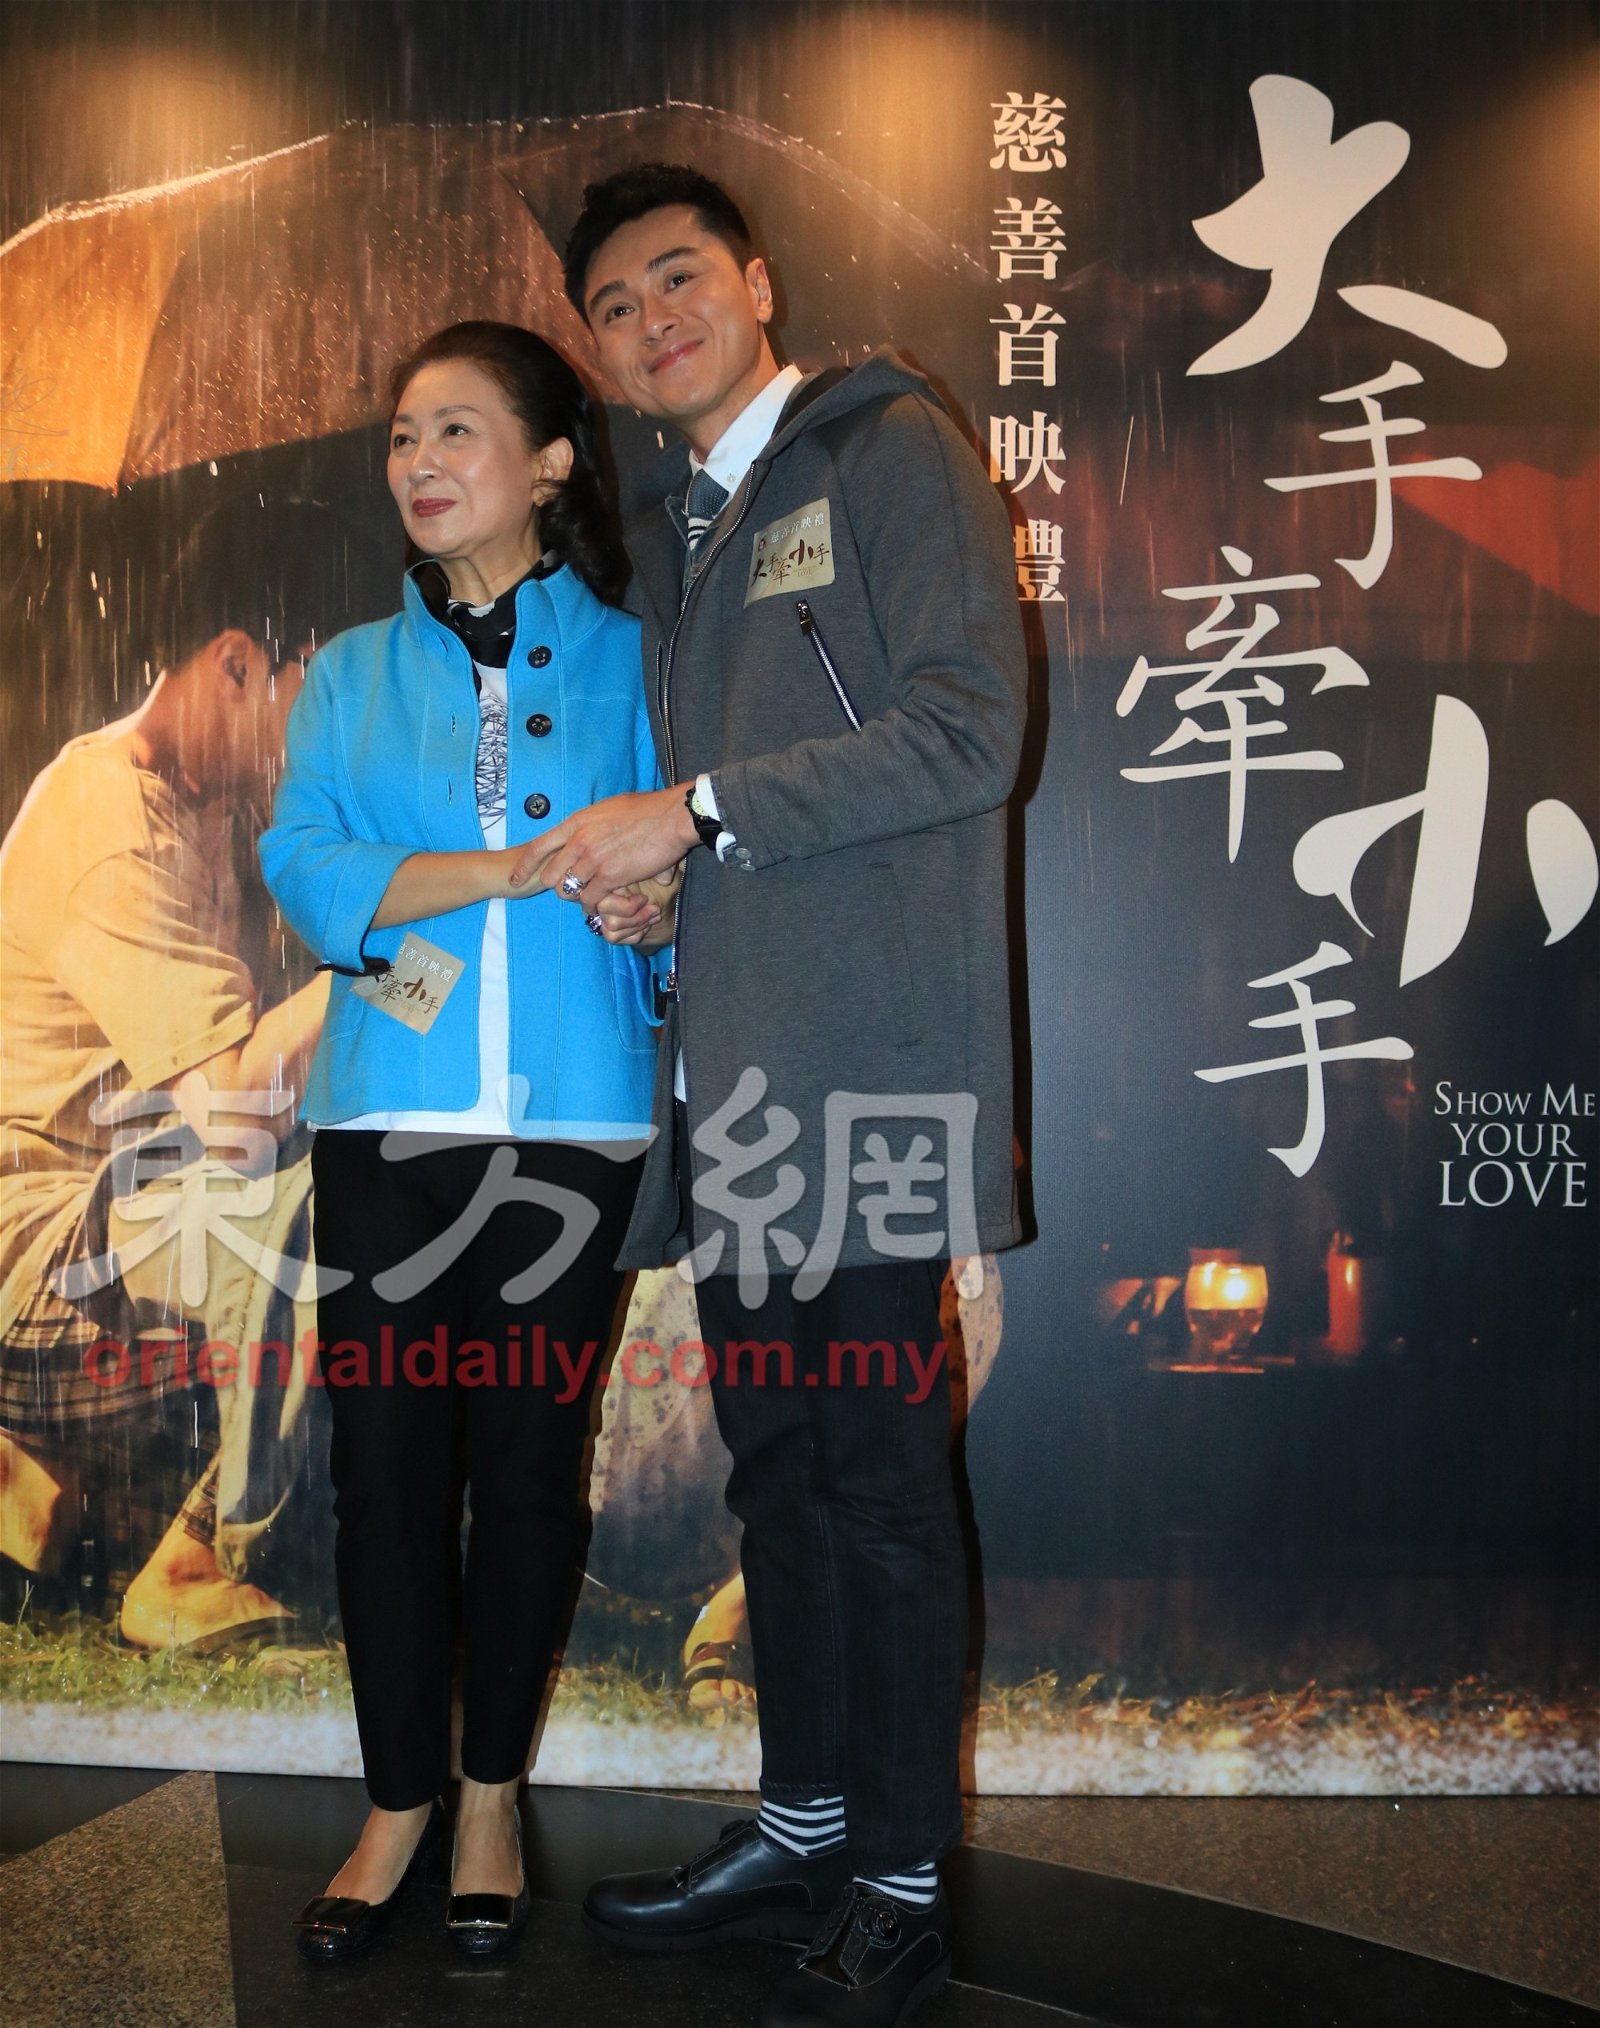 为了能与老戏骨鲍姐合作，黄浩然不惜向TVB请假都要拍这部电影，他们俩“惺惺相惜”，更笑言已经互相“仰慕”多年，对首次合作即能合演母子感到兴奋。